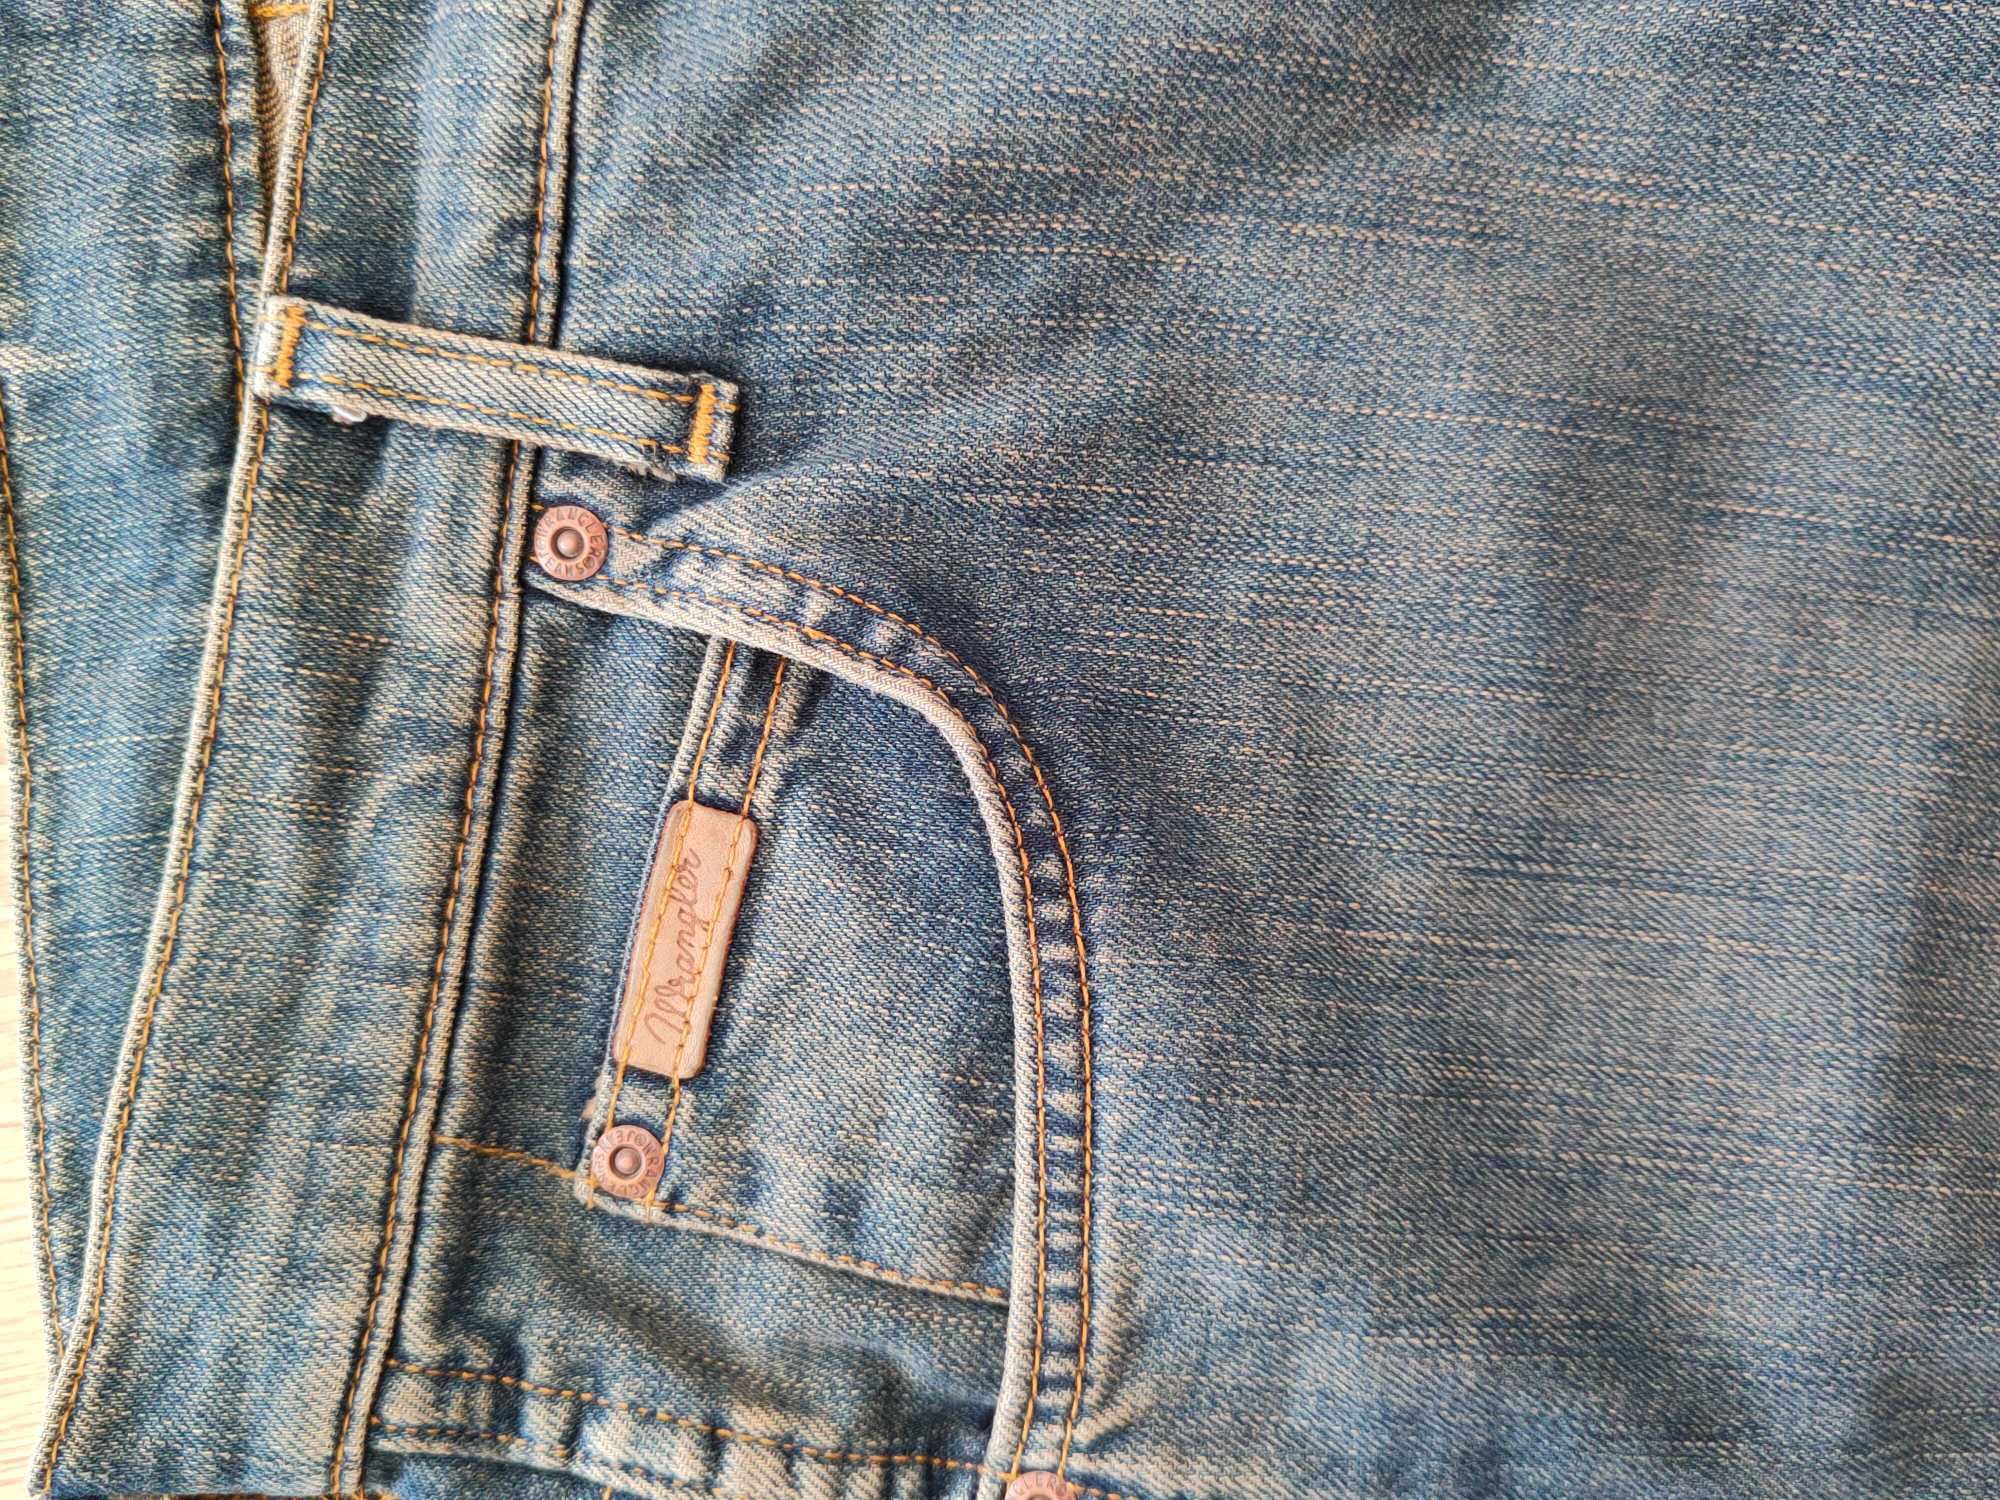 Spodnie męskie jeansy WRANGLER 32 32